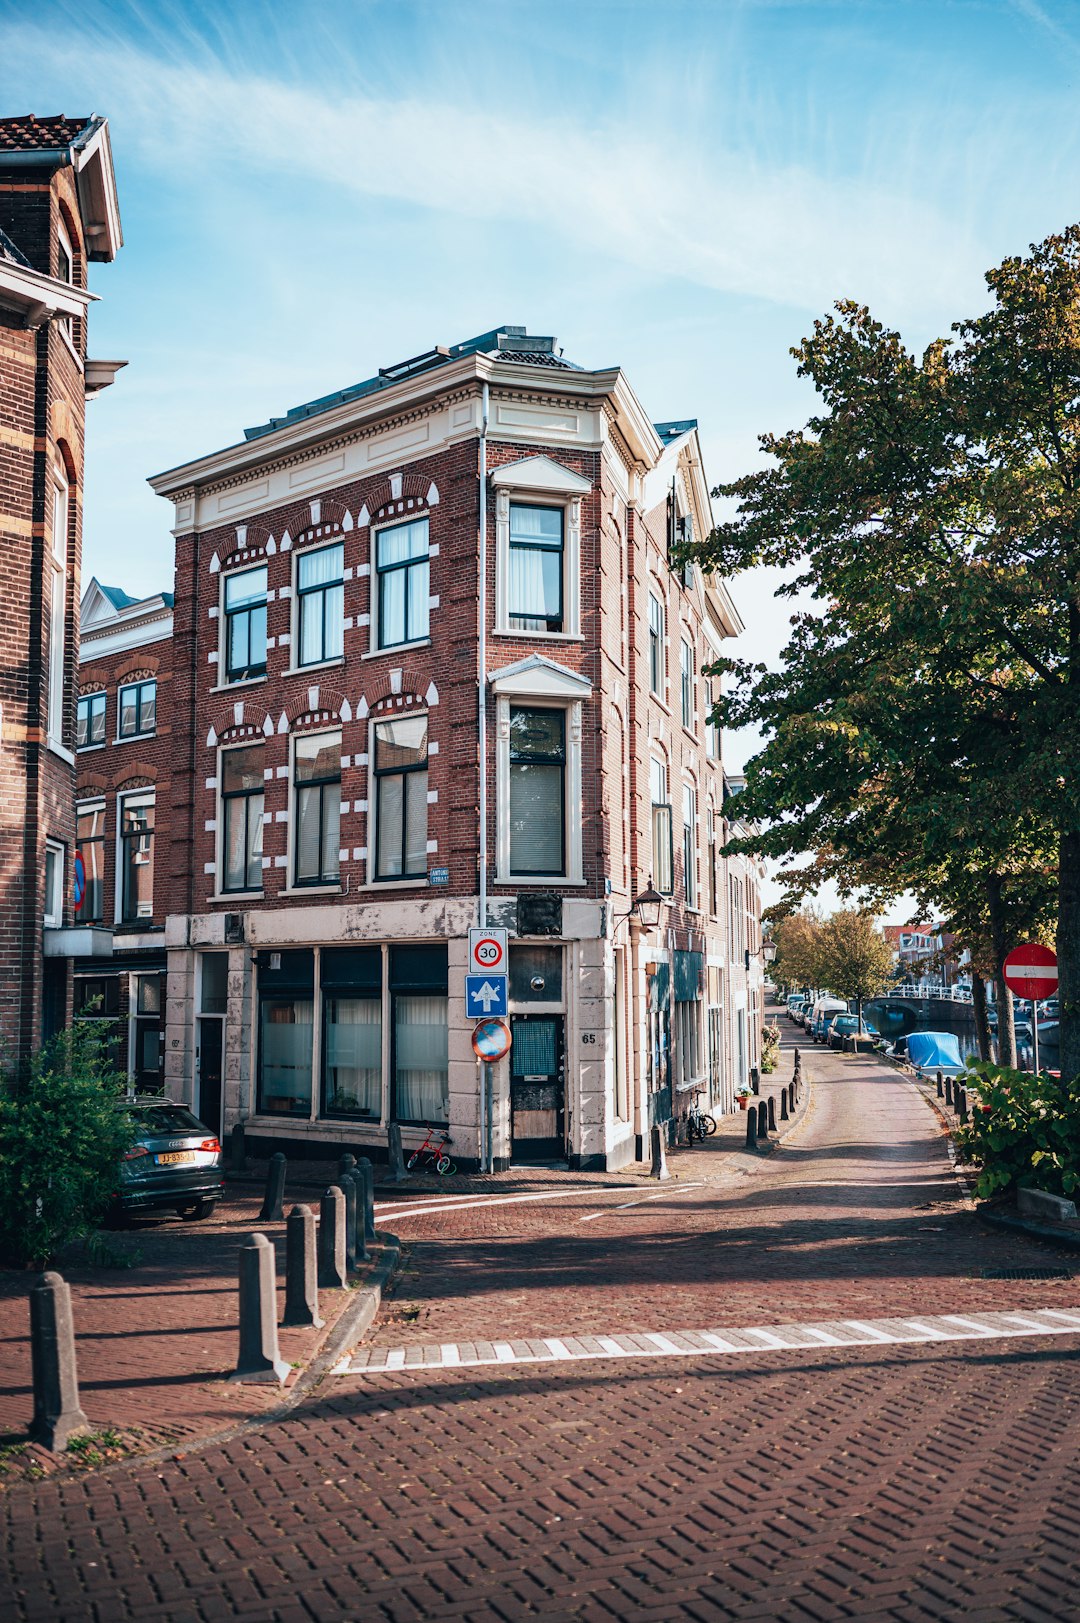 Town photo spot Haarlem Hague